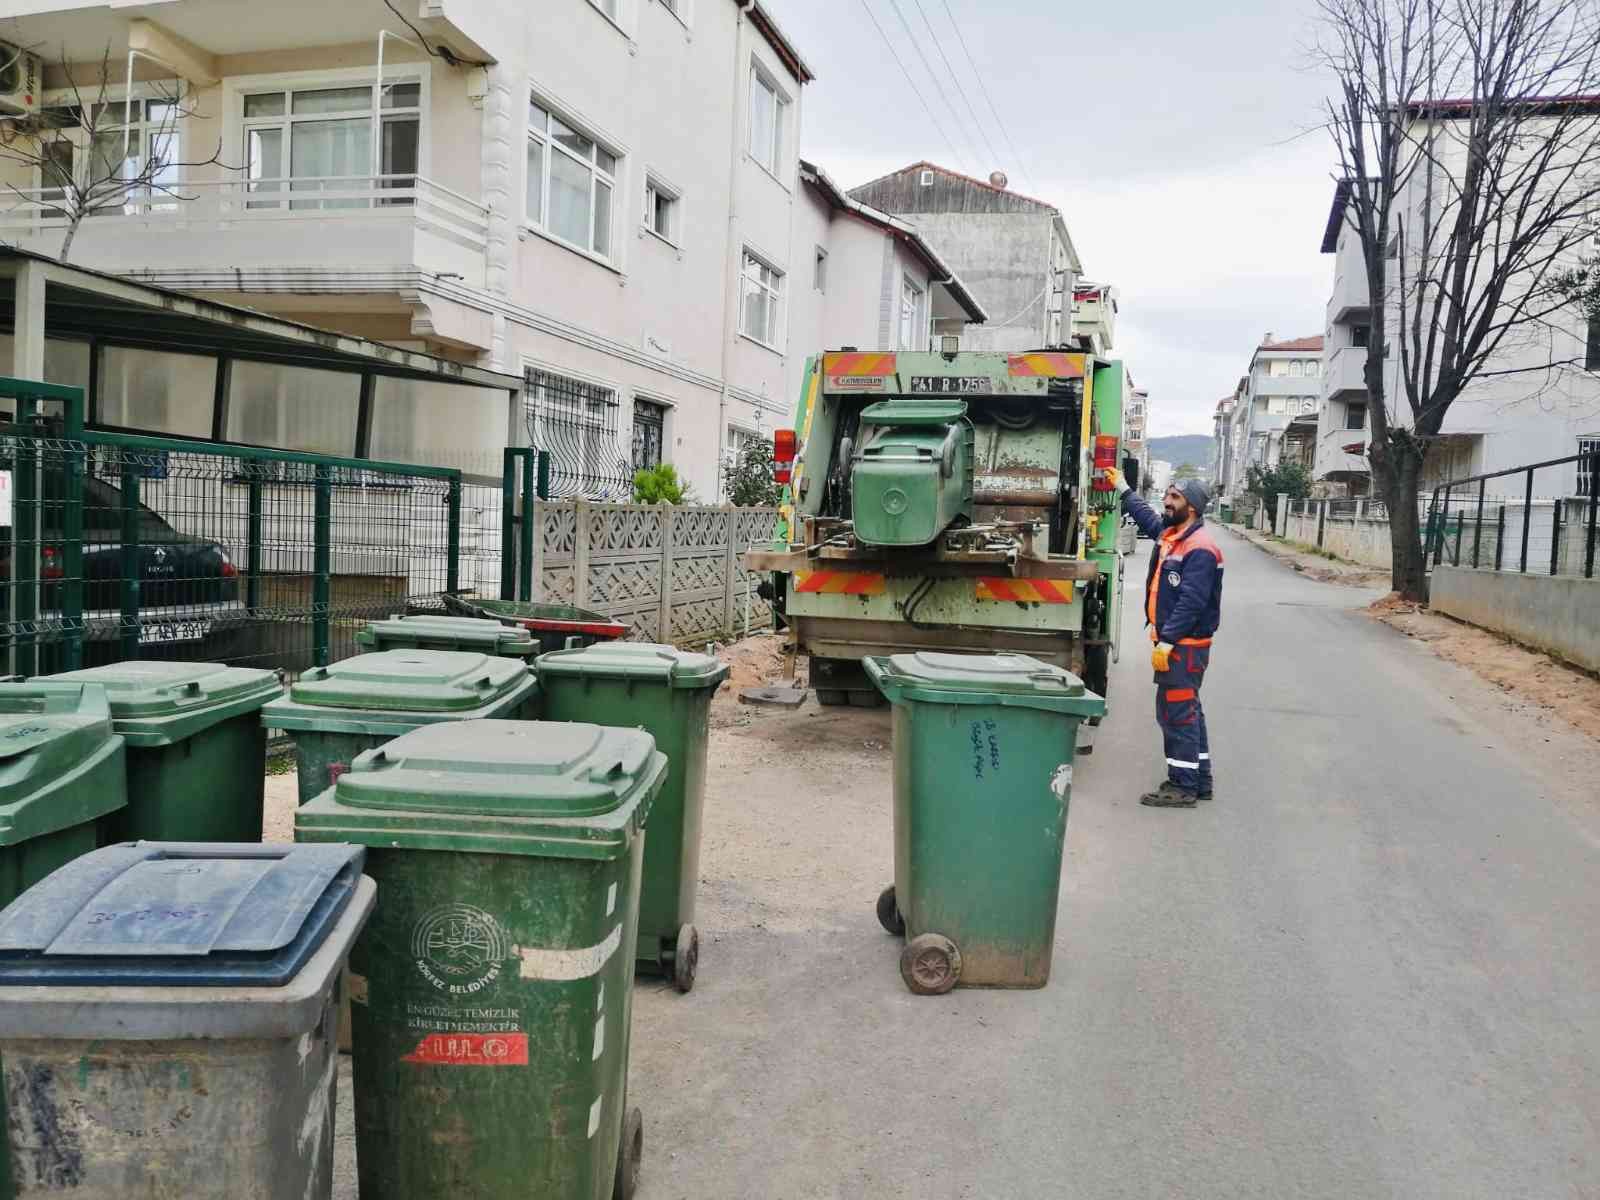 Körfez’de çöp konteynırları temizleniyor #kocaeli